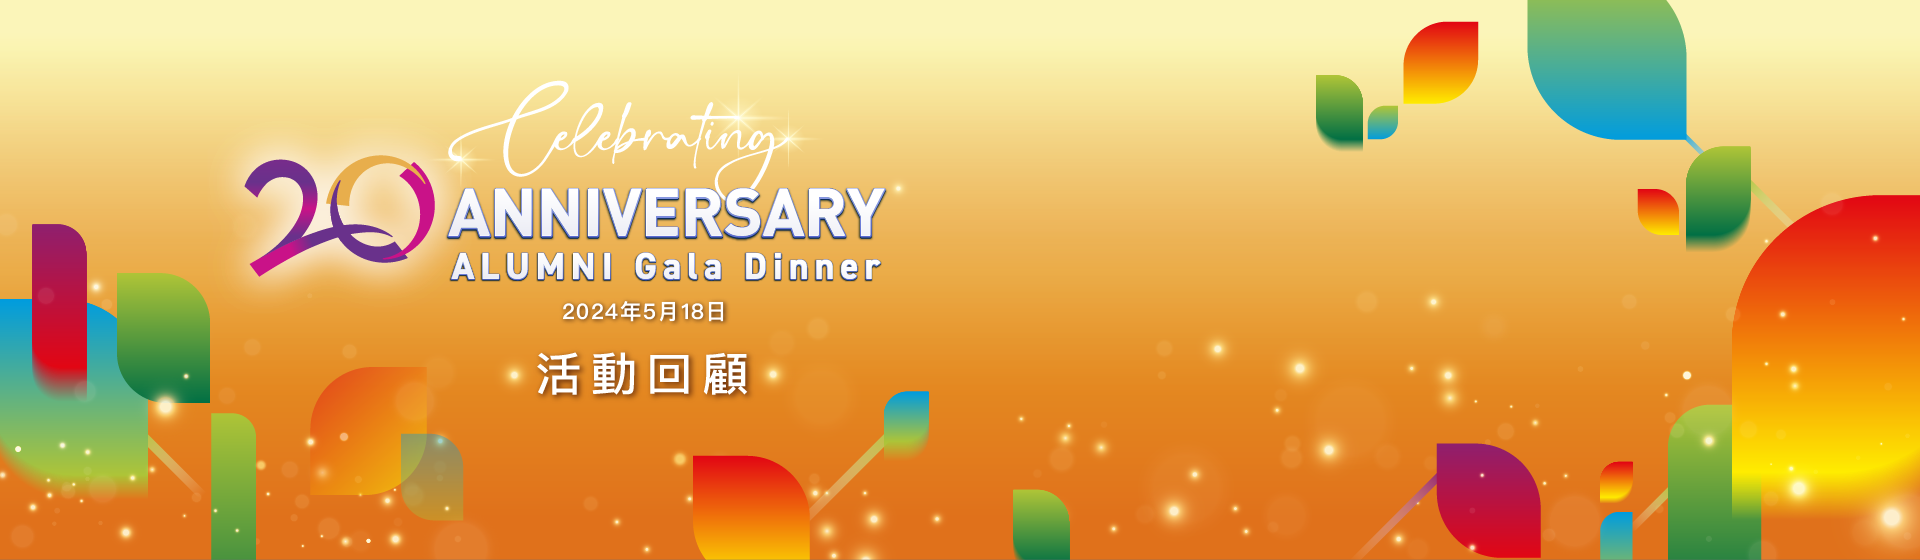 香港大学专业进修学院校友会成立20周年庆祝晚宴